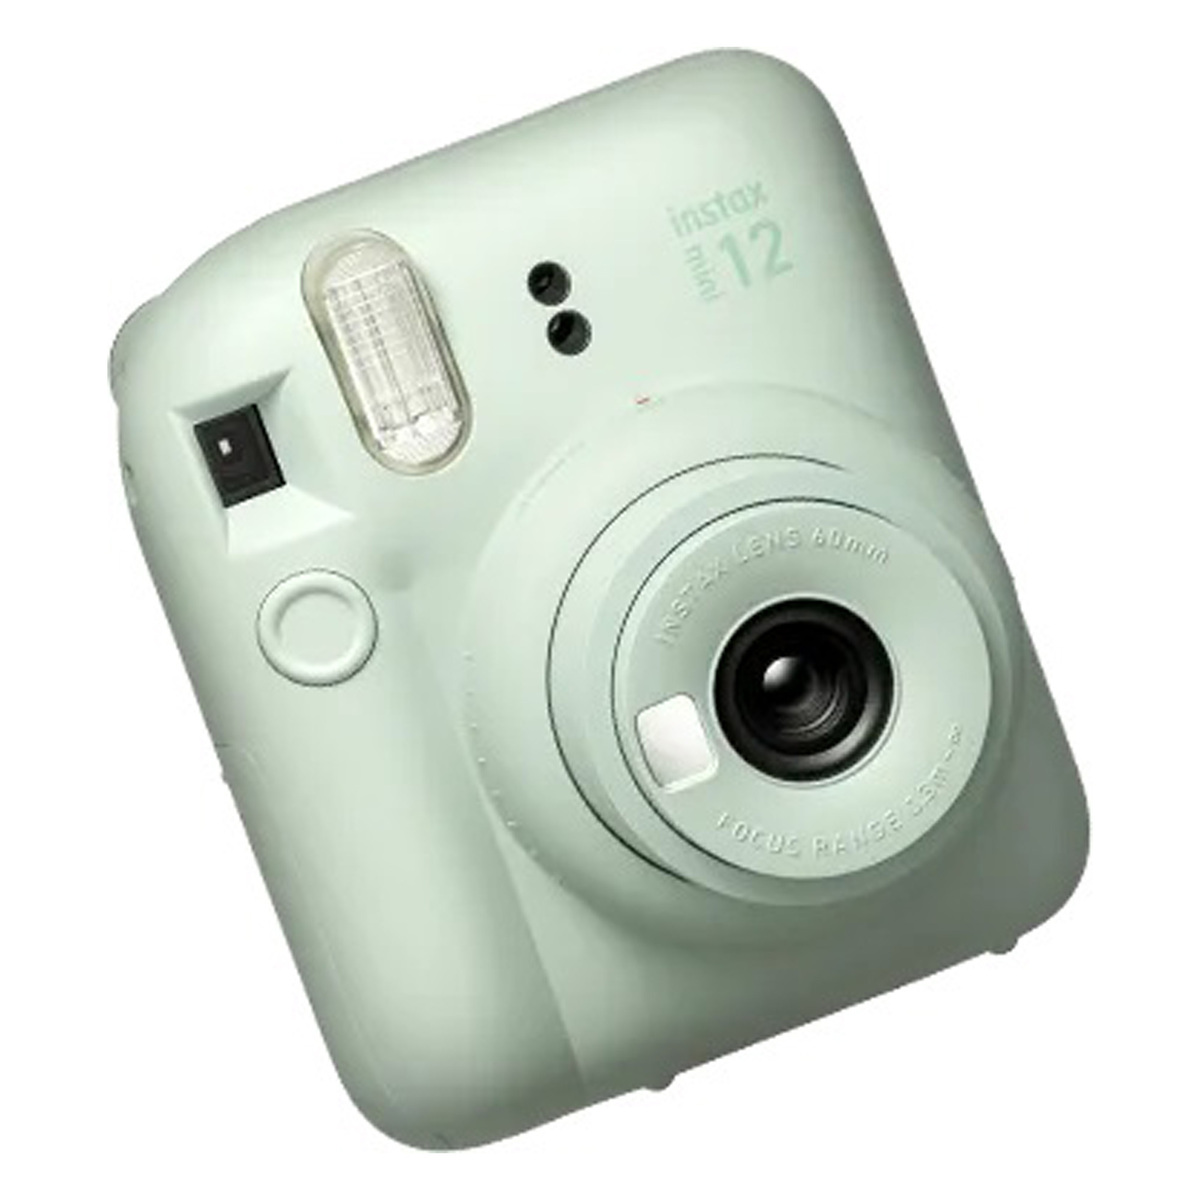 Fujifilm INSTAX Mini 12 Instant Film Camera (Mint Green)